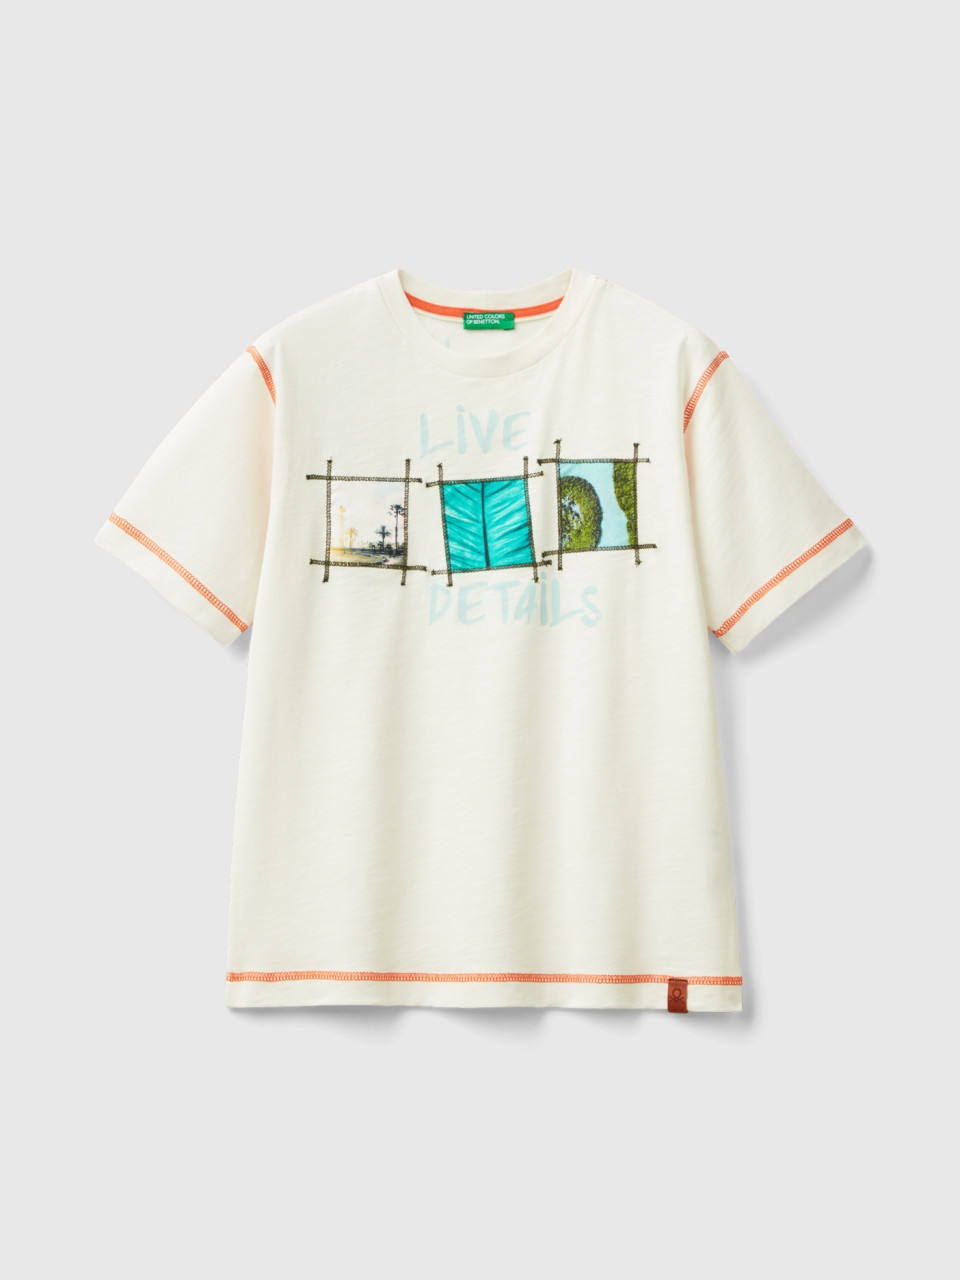 Benetton, Camiseta Con Estampado Fotográfico, Blanco Crema, Niños